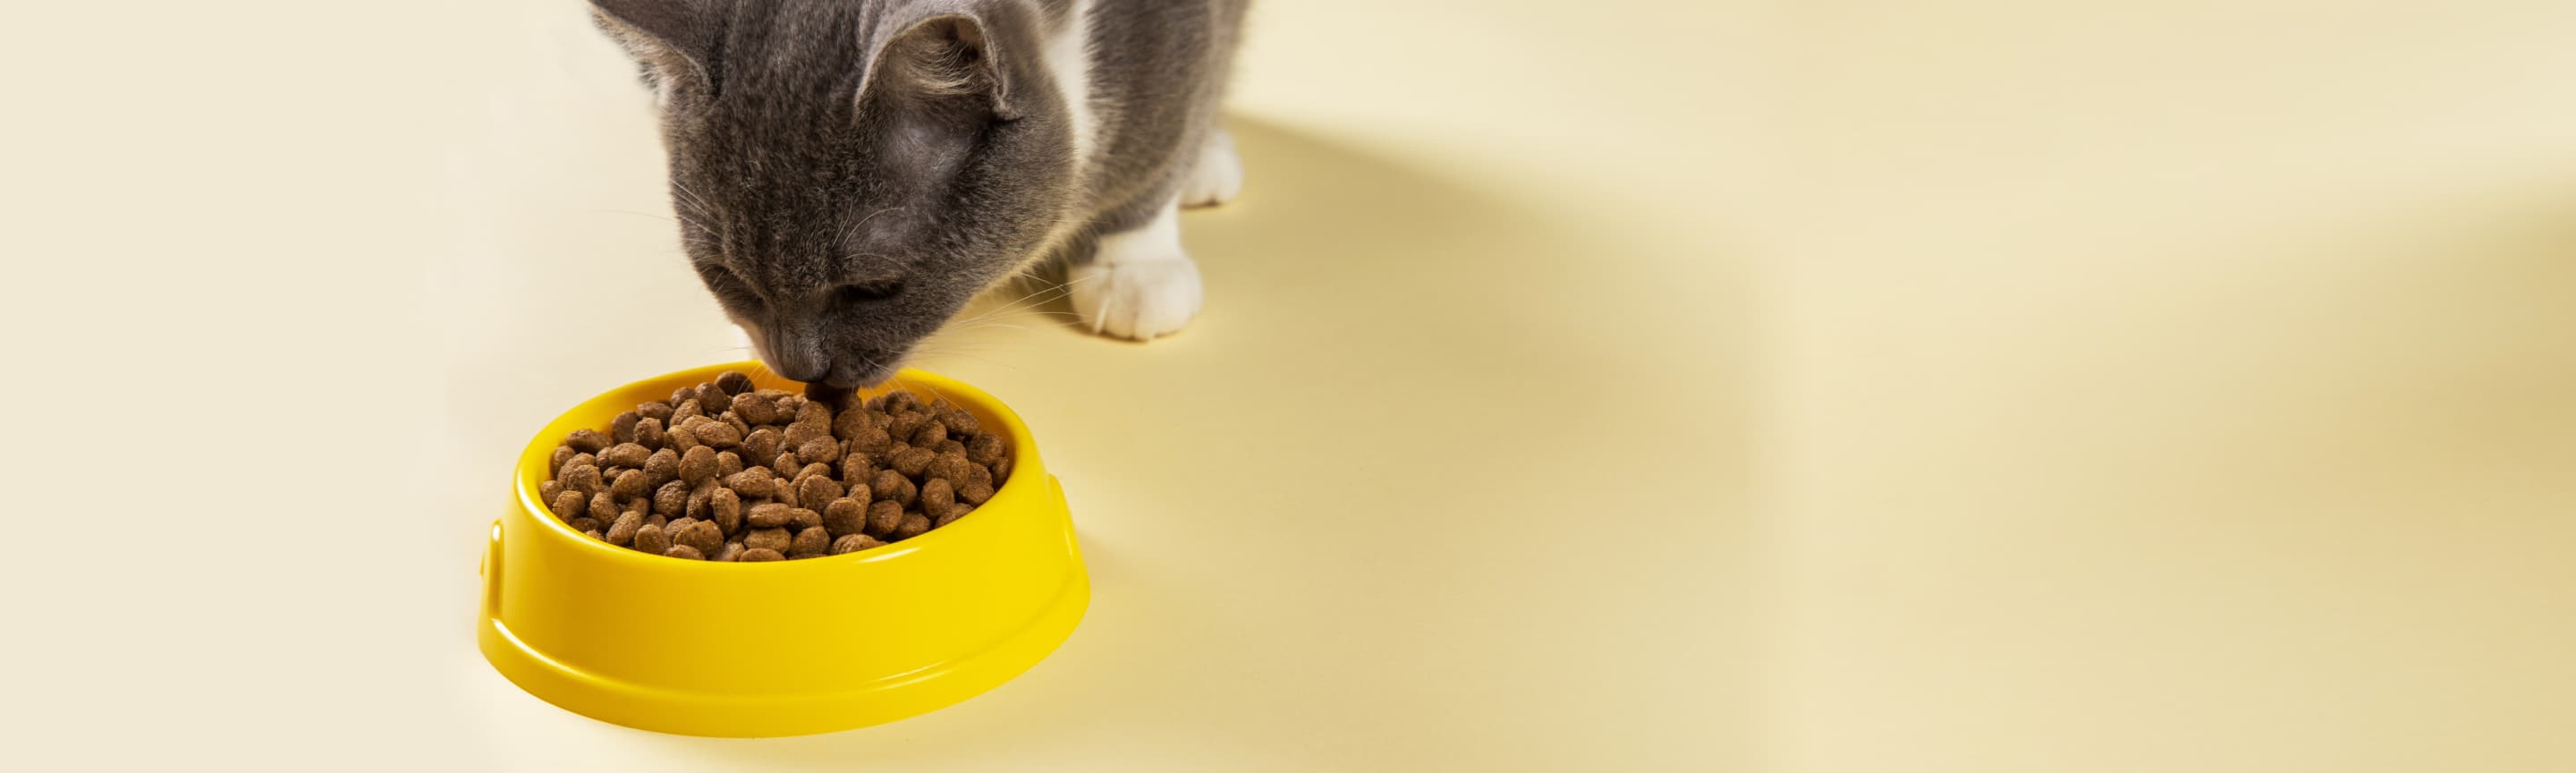 Чим кормить котенка?